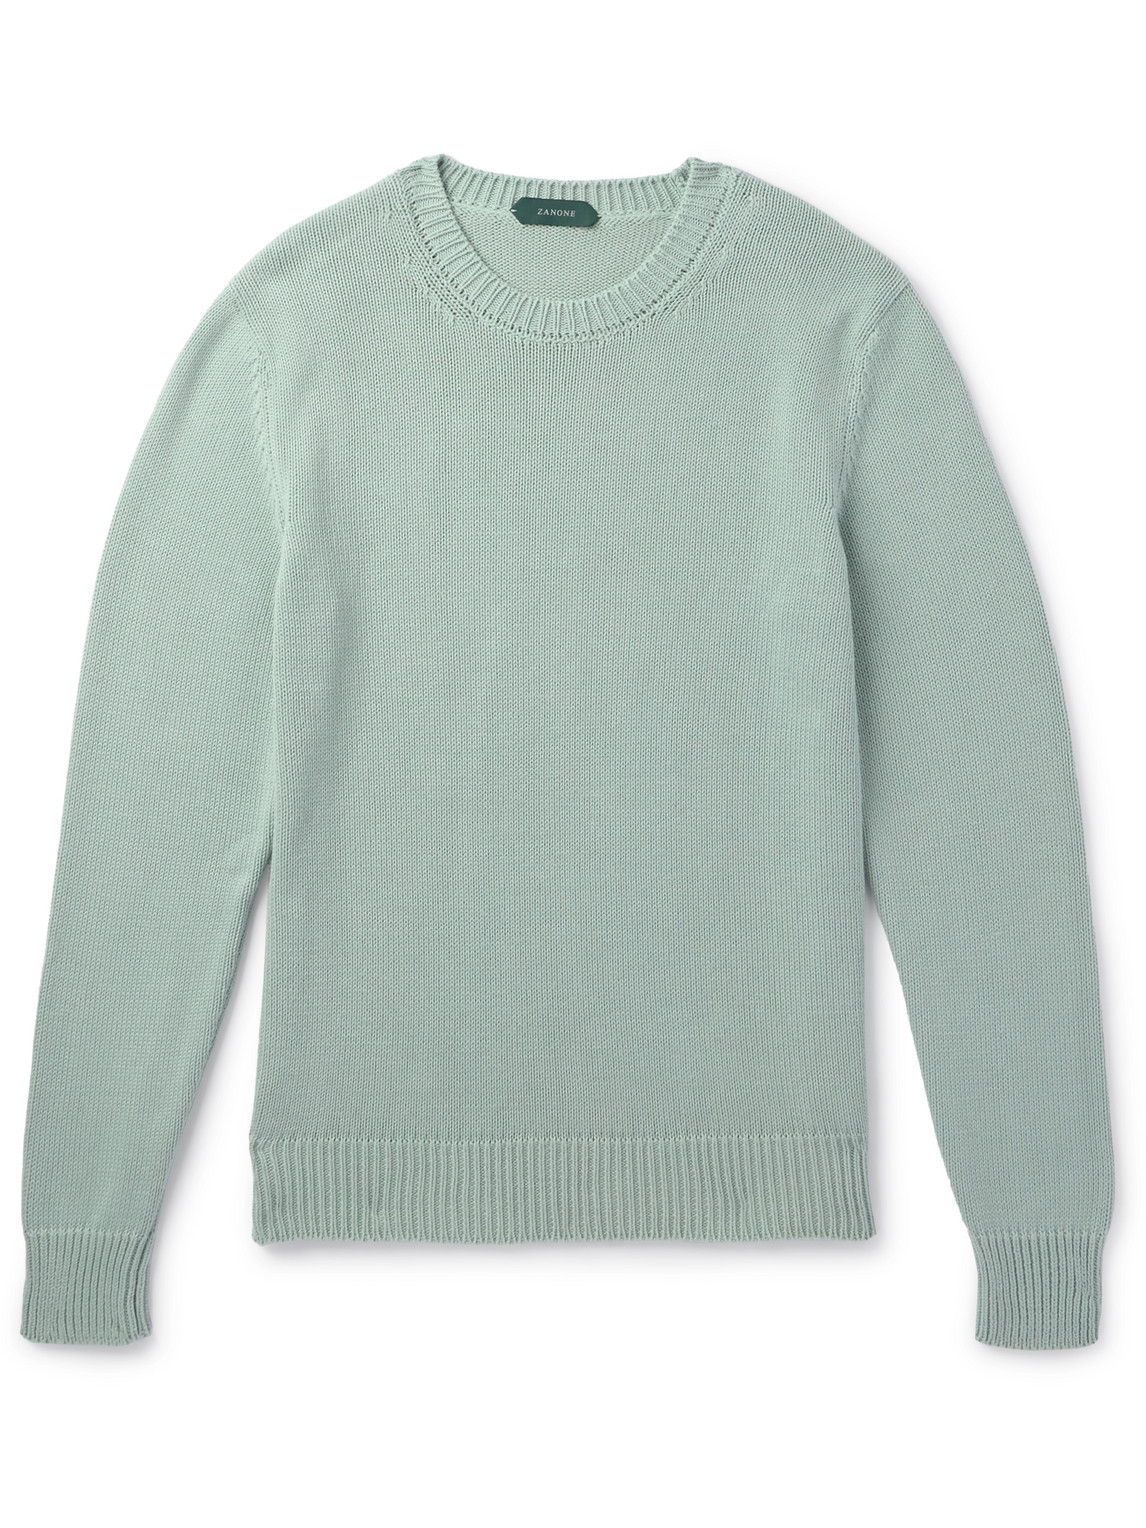 Incotex - Zanone Slim-Fit Cotton Sweater - Men - Green - IT 56 von Incotex